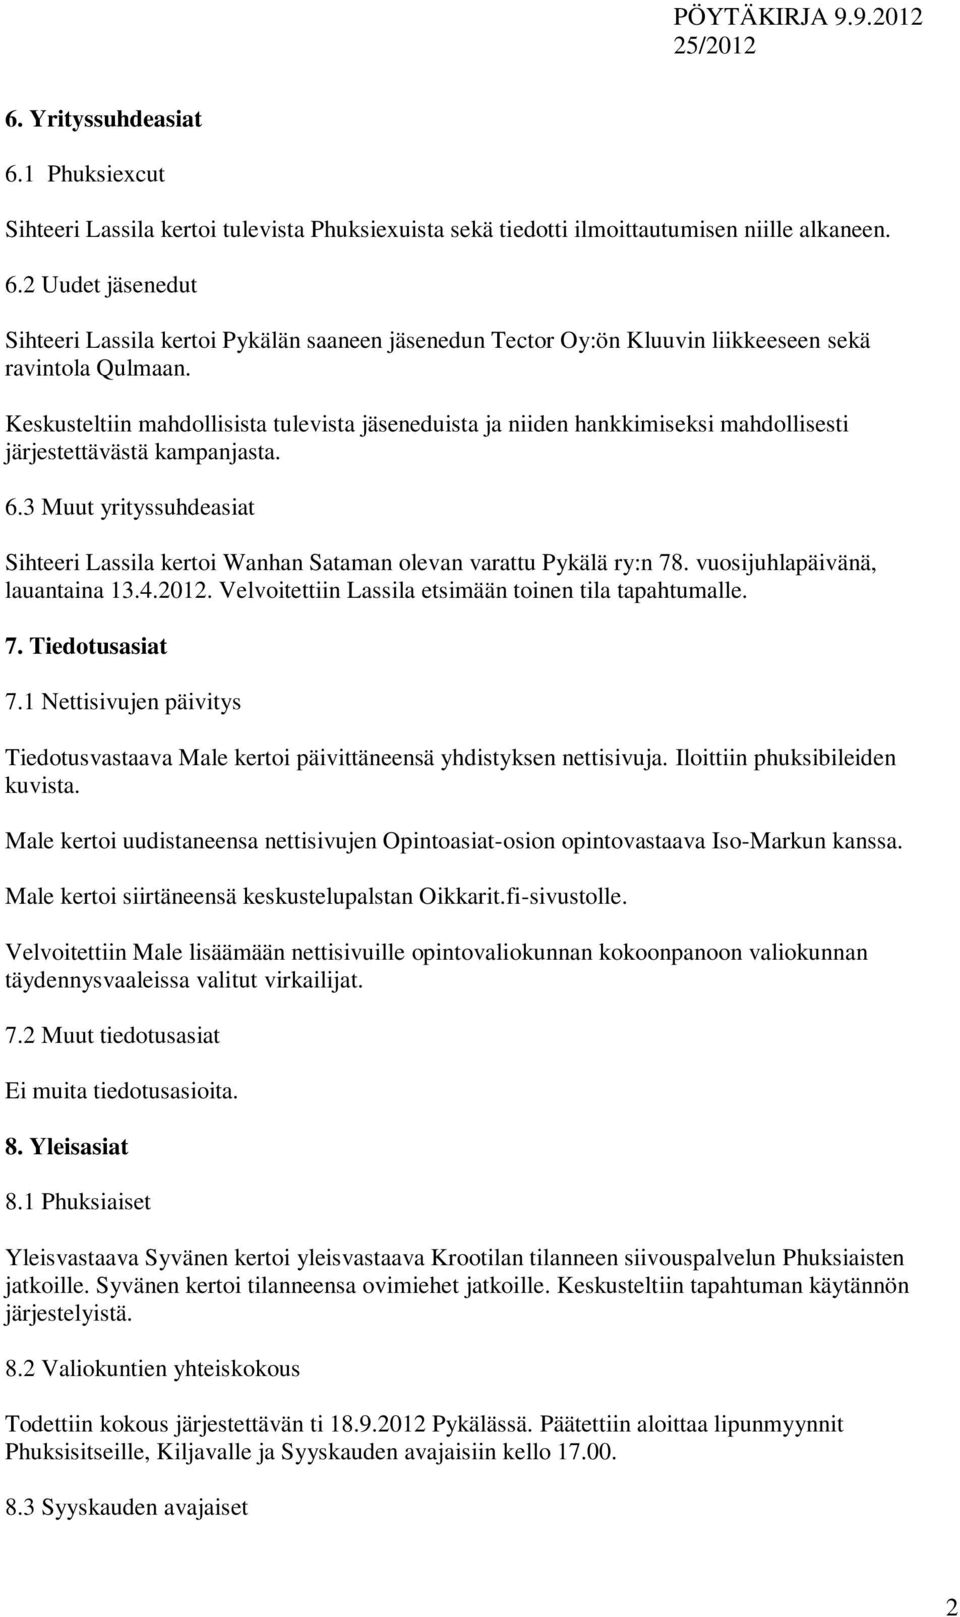 3 Muut yrityssuhdeasiat Sihteeri Lassila kertoi Wanhan Sataman olevan varattu Pykälä ry:n 78. vuosijuhlapäivänä, lauantaina 13.4.2012. Velvoitettiin Lassila etsimään toinen tila tapahtumalle. 7. Tiedotusasiat 7.